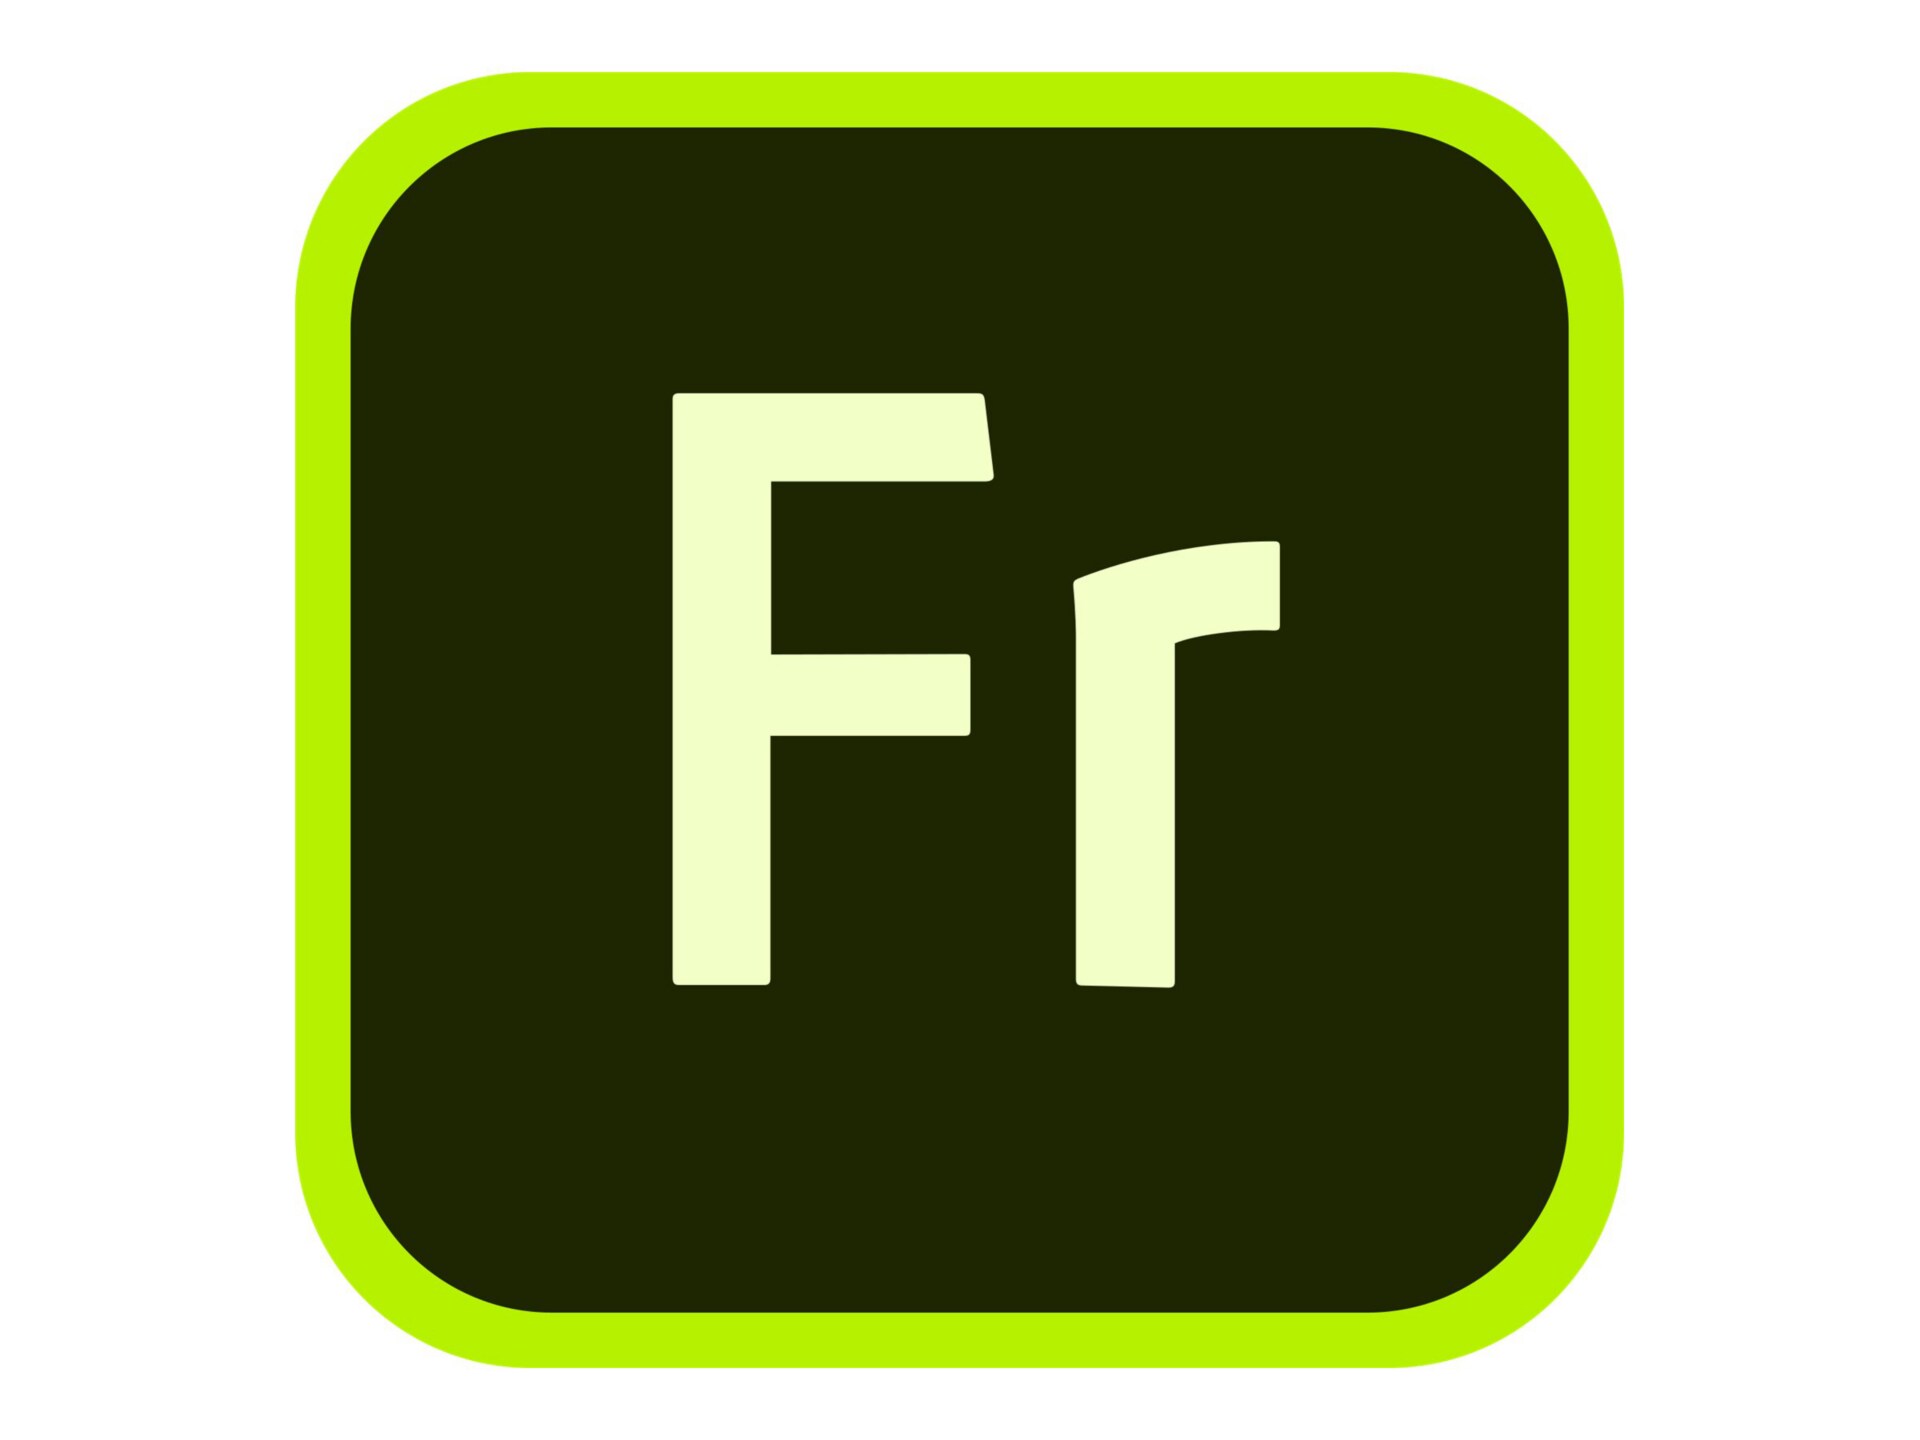 Adobe Fresco for enterprise - Subscription New (18 months) - 1 user